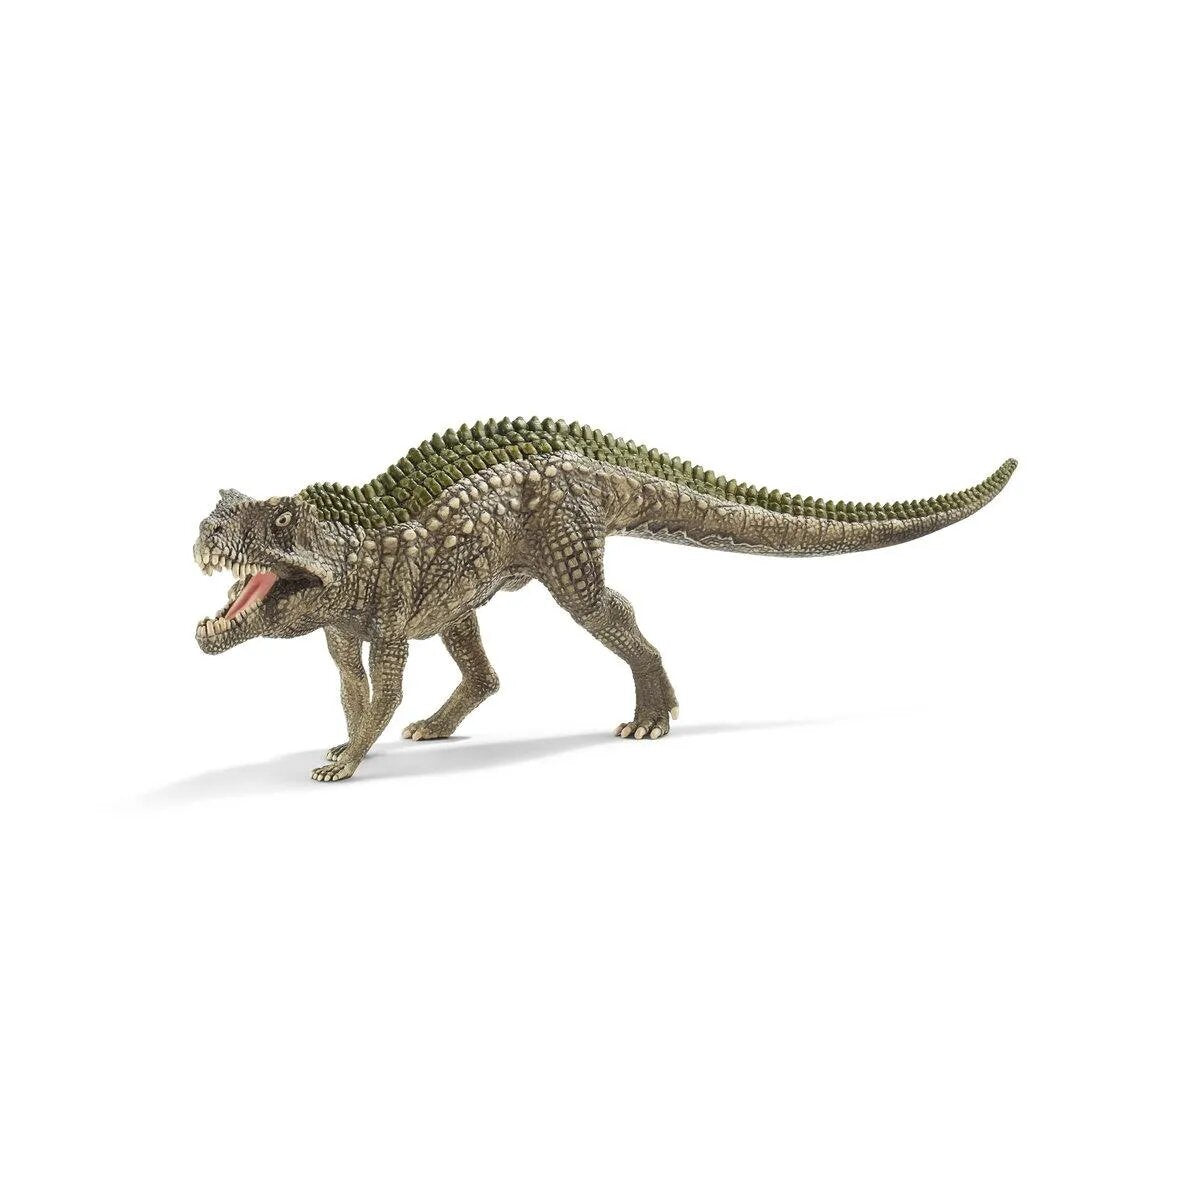 Schleich® 15018 Dinosaurs Postosuchus